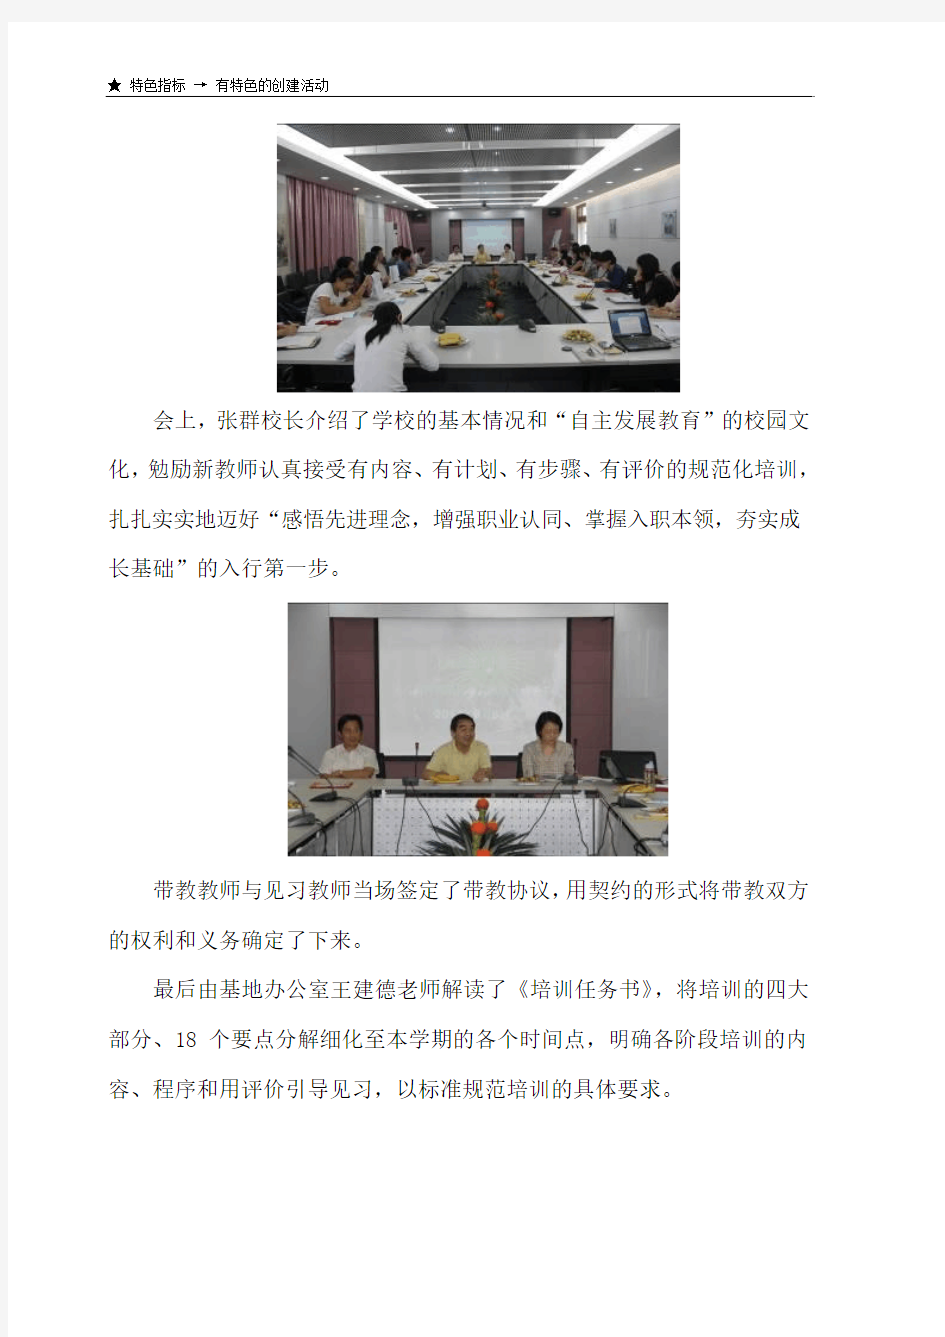 上海教师专业发展学校暨见习教师规范化培训基地-控江中学